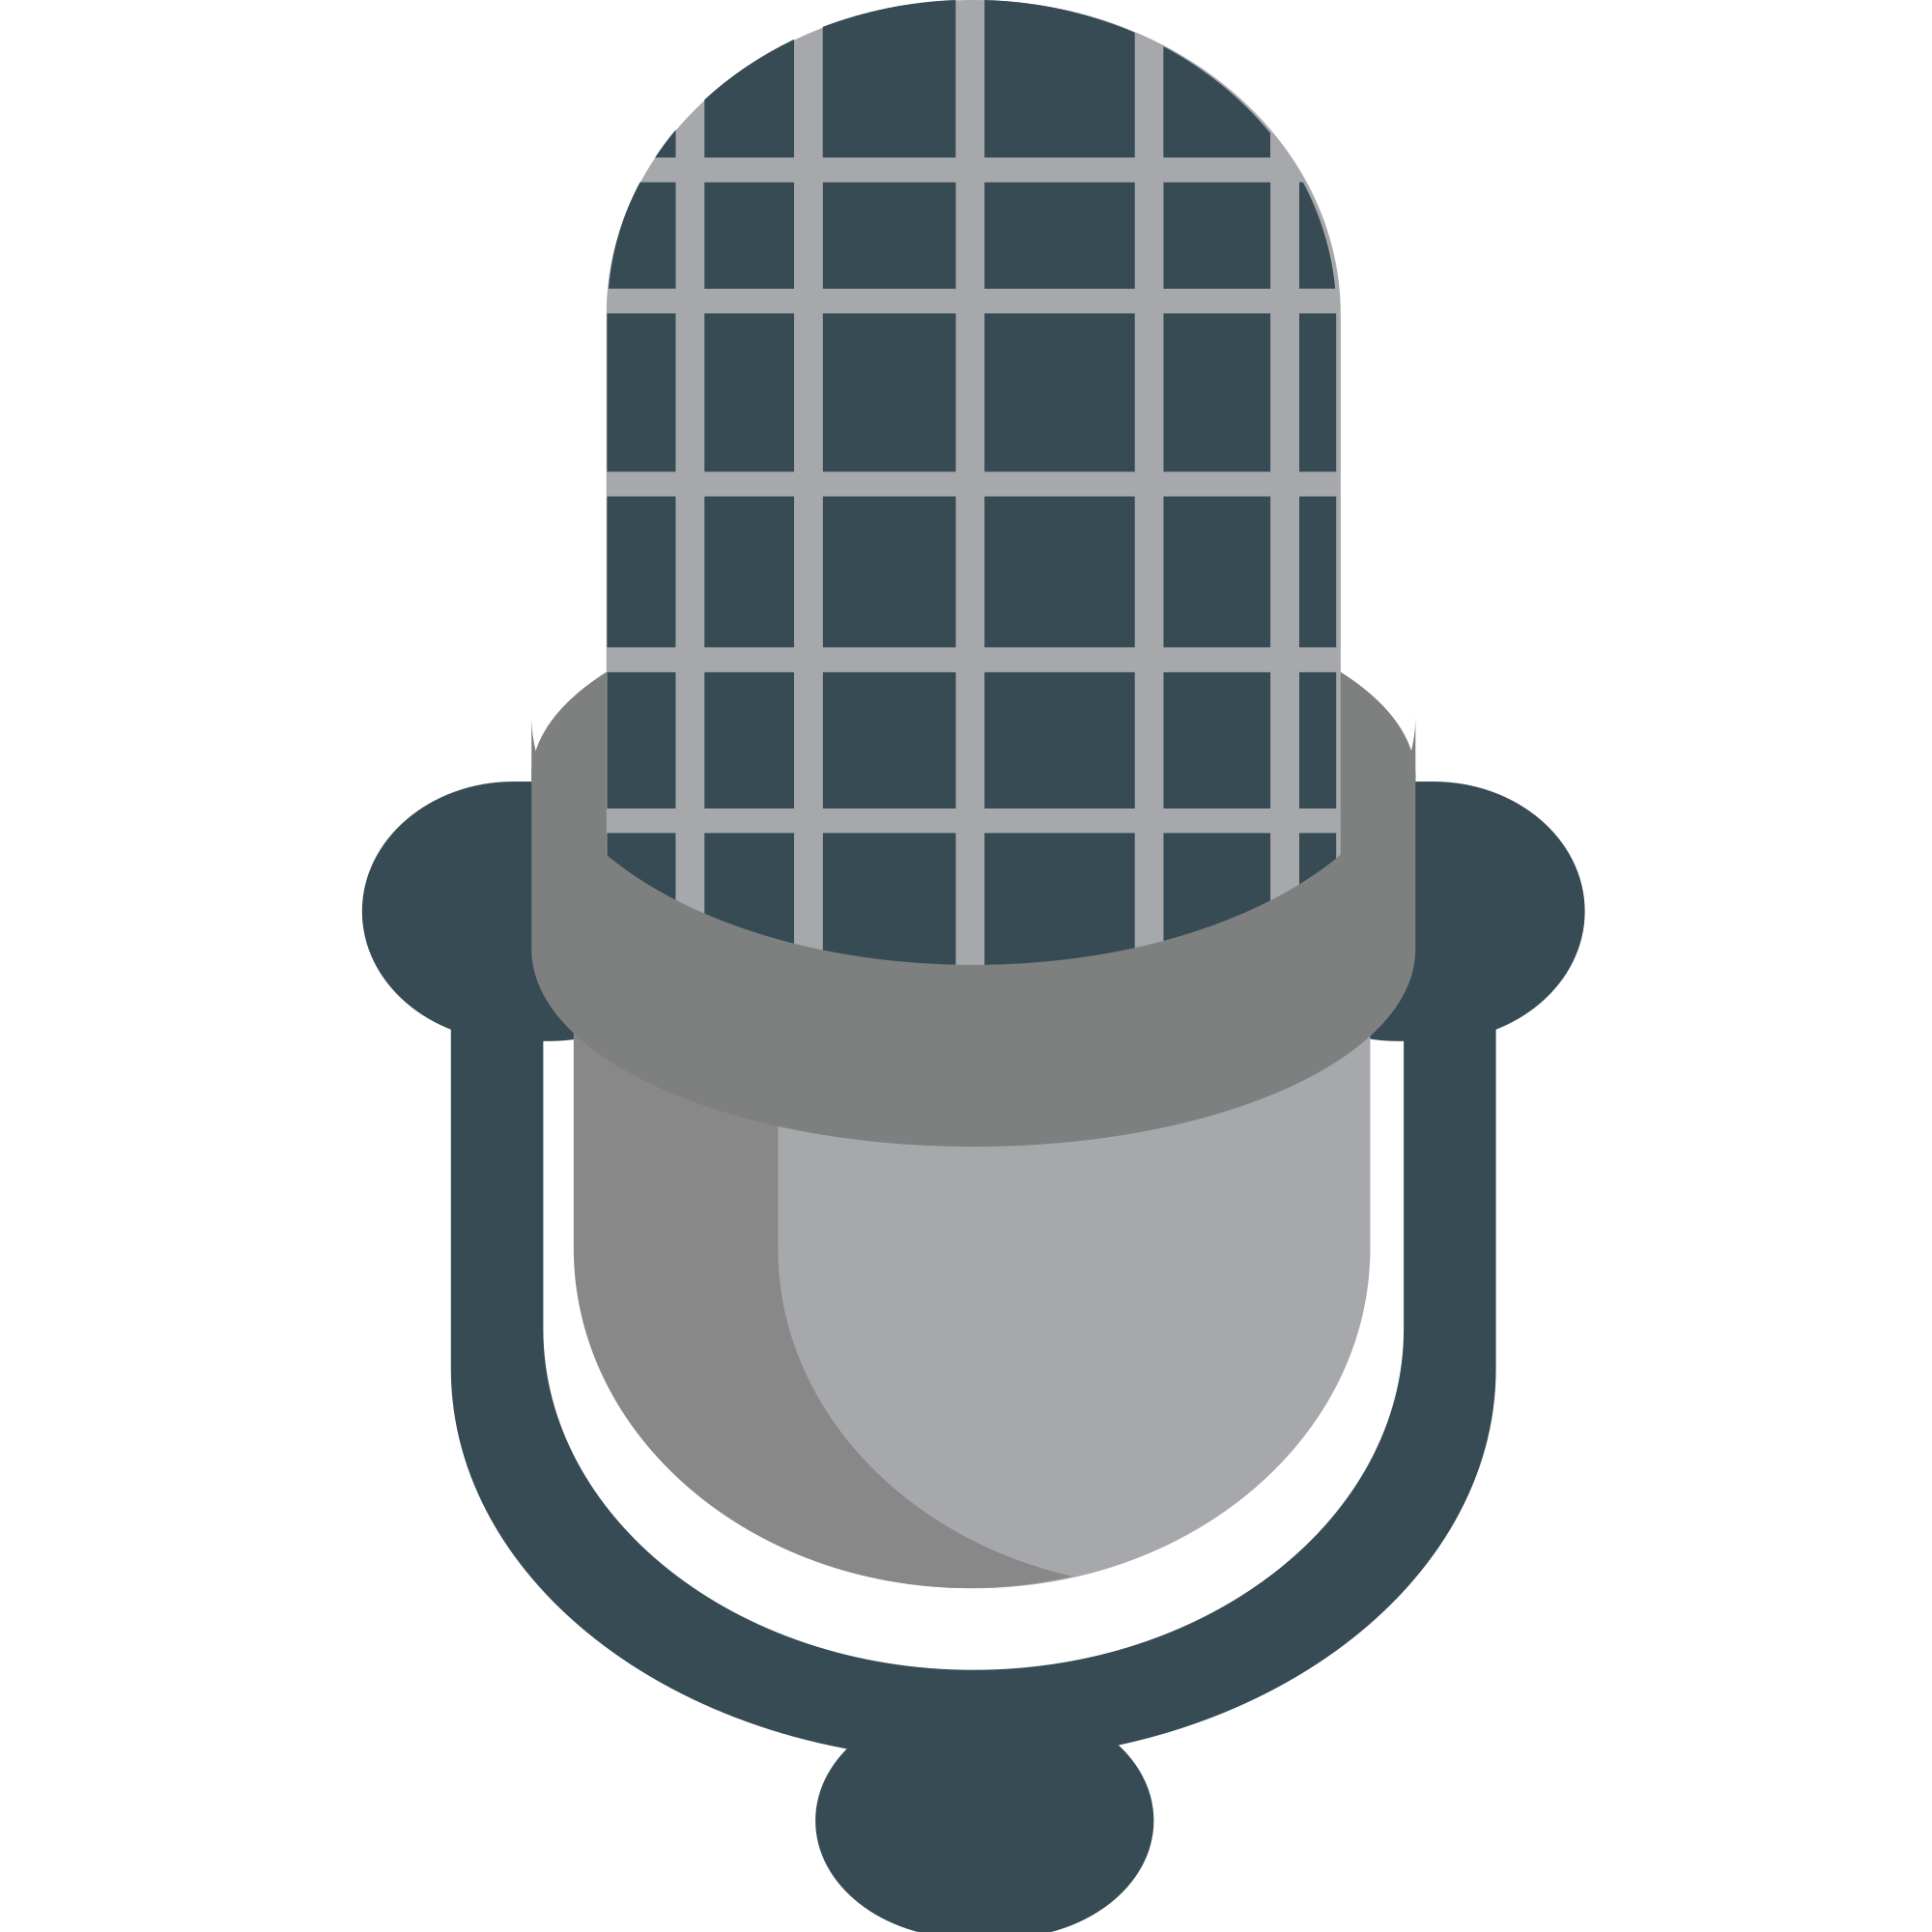 microphone clipart emoji